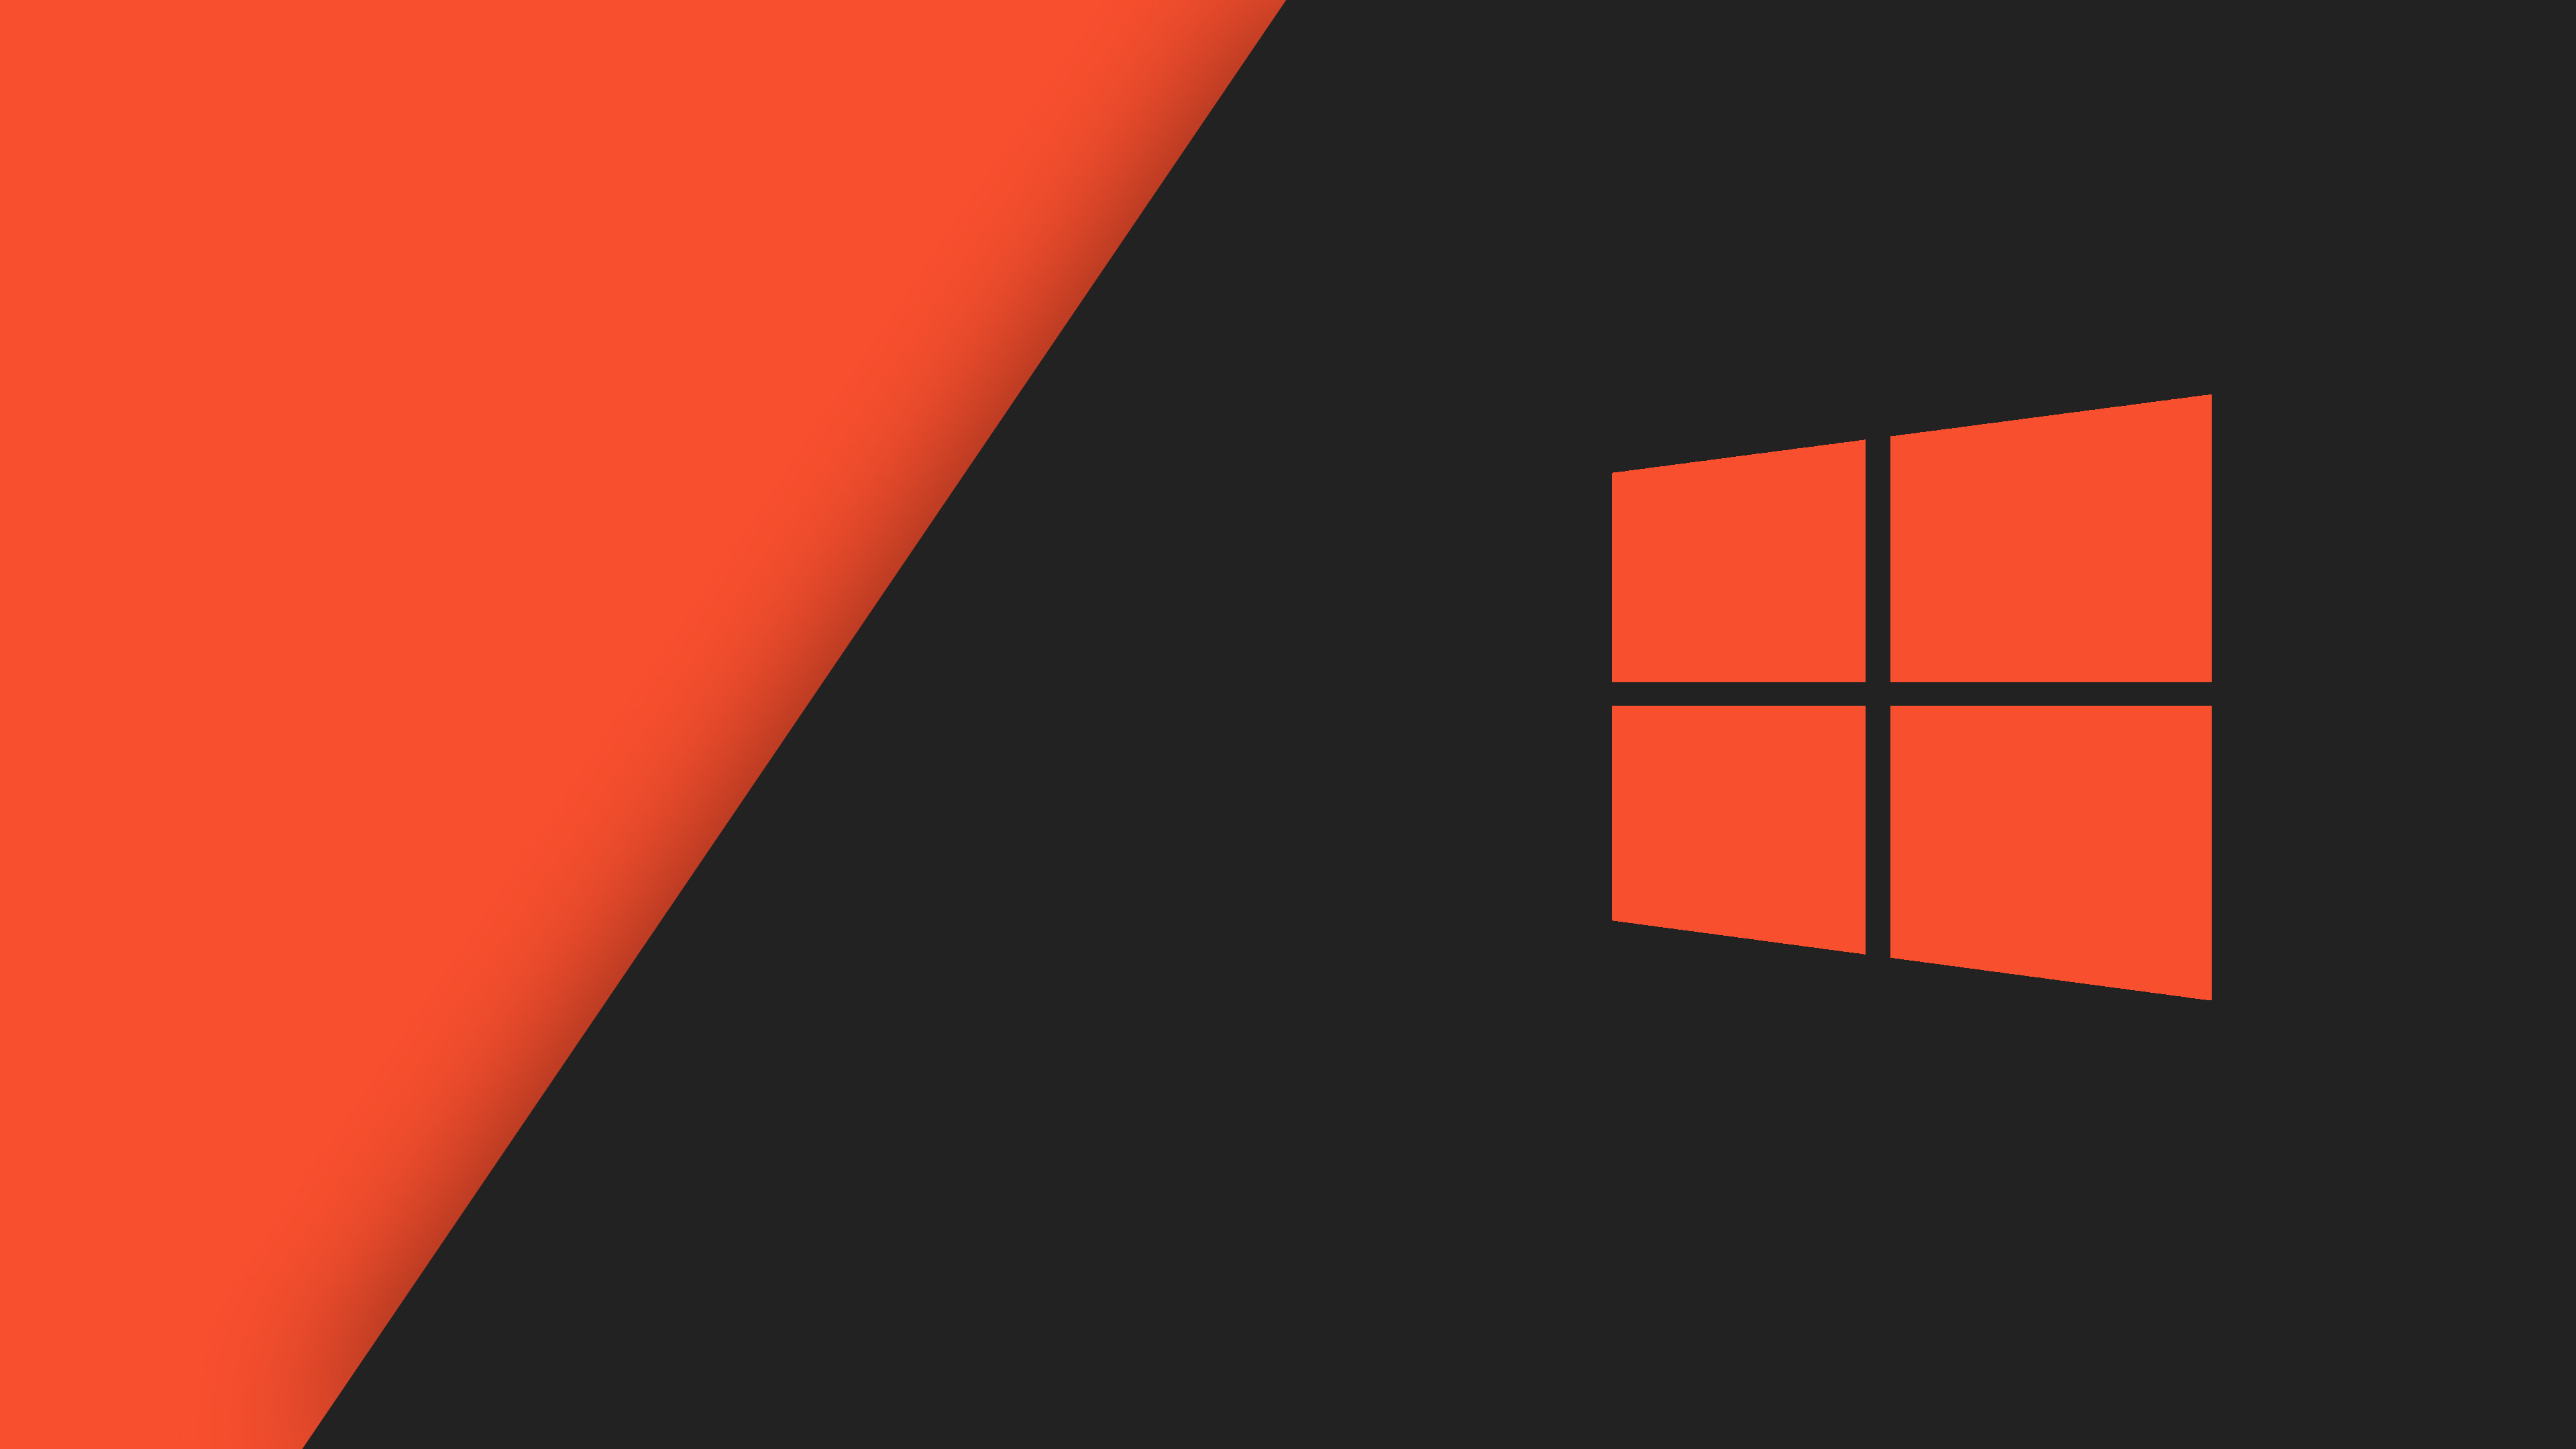 3840x2160 Windows 10 Wallpaper Red/Grey by Spectalfrag on DeviantArt